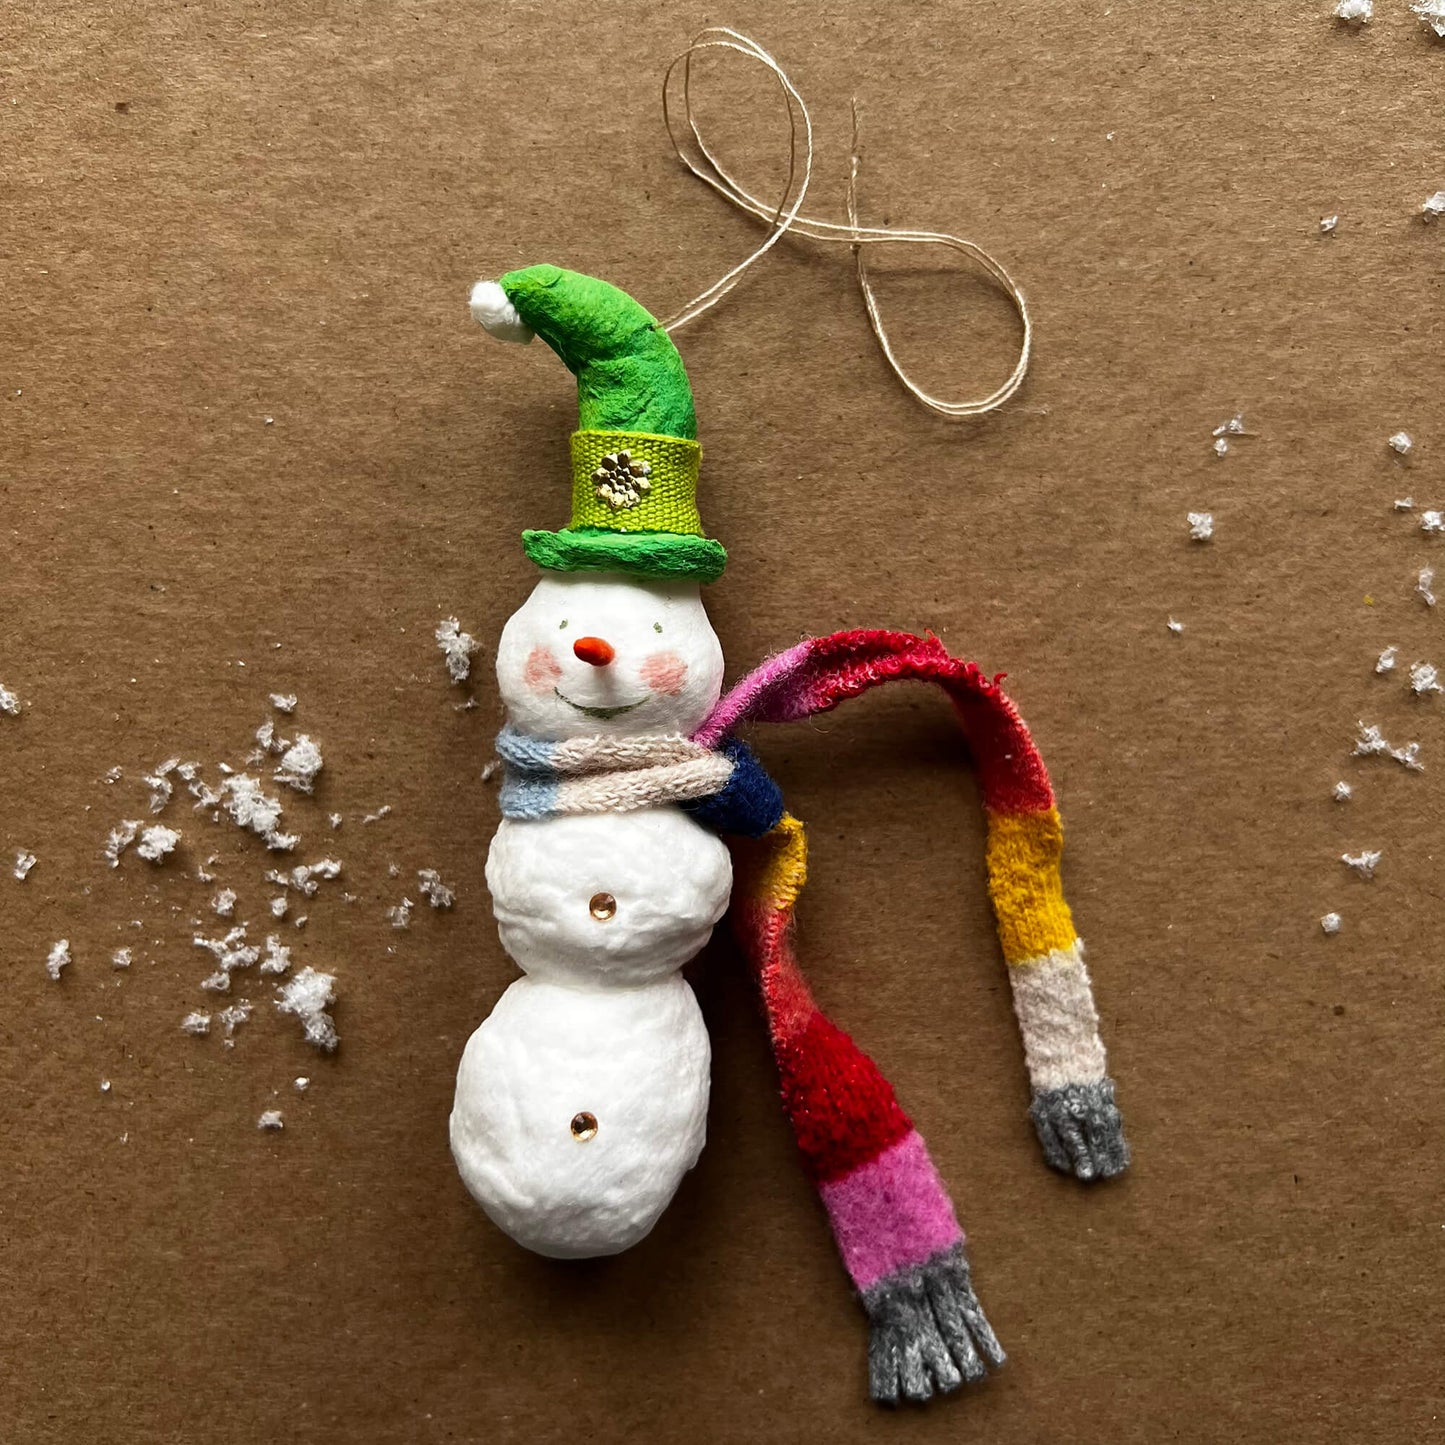 Snowman with Green Hat, Handmade Spun Cotton Ornament